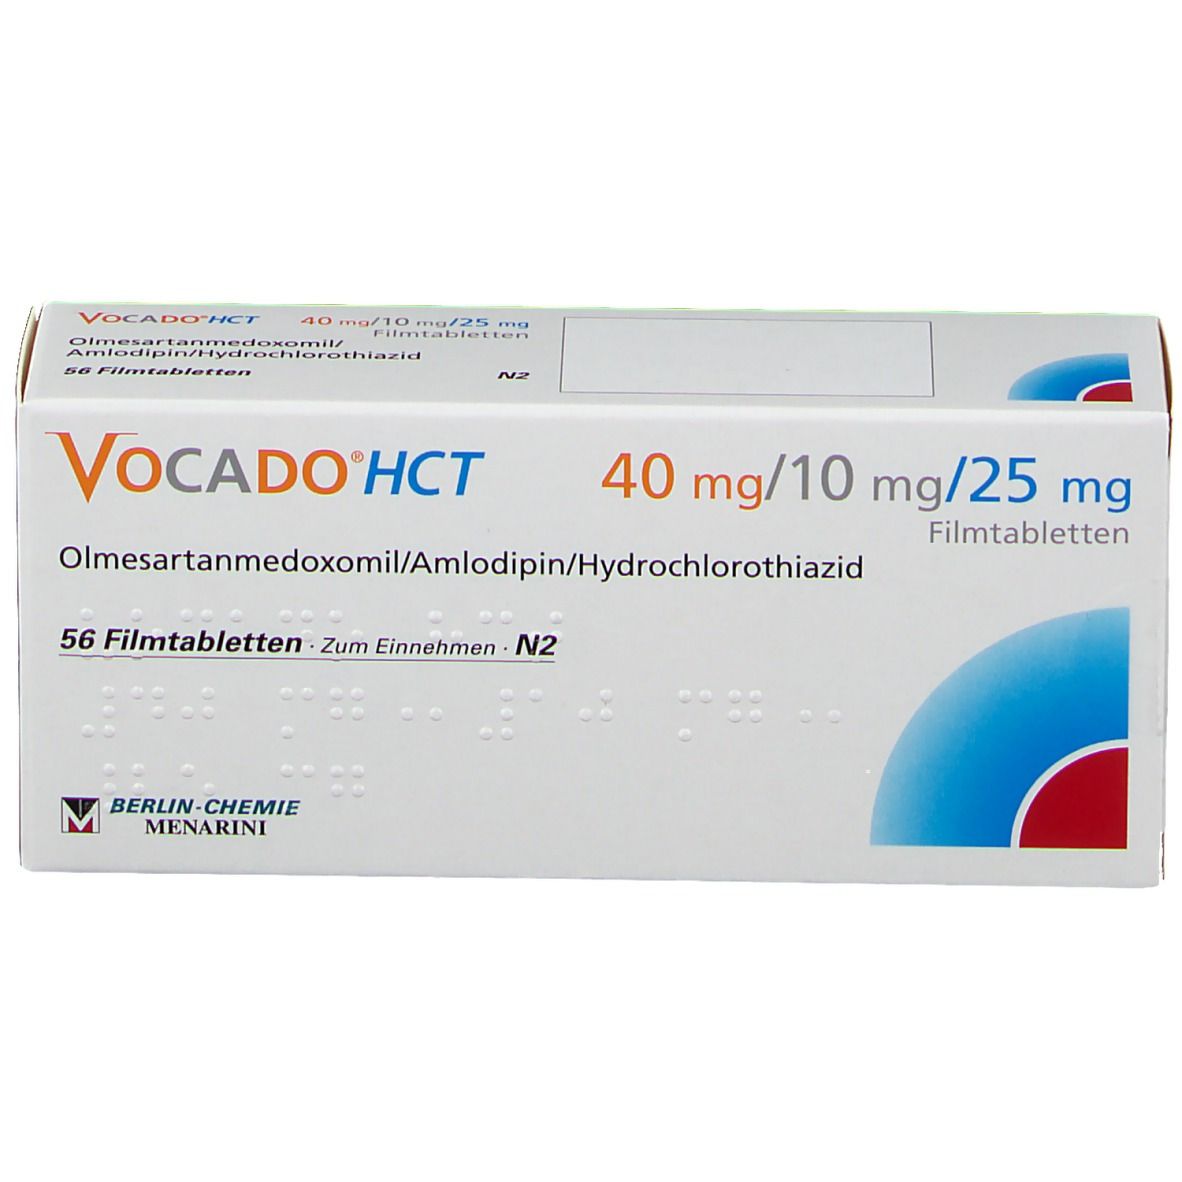 Vocado®HCT 40 mg/10 mg/25 mg